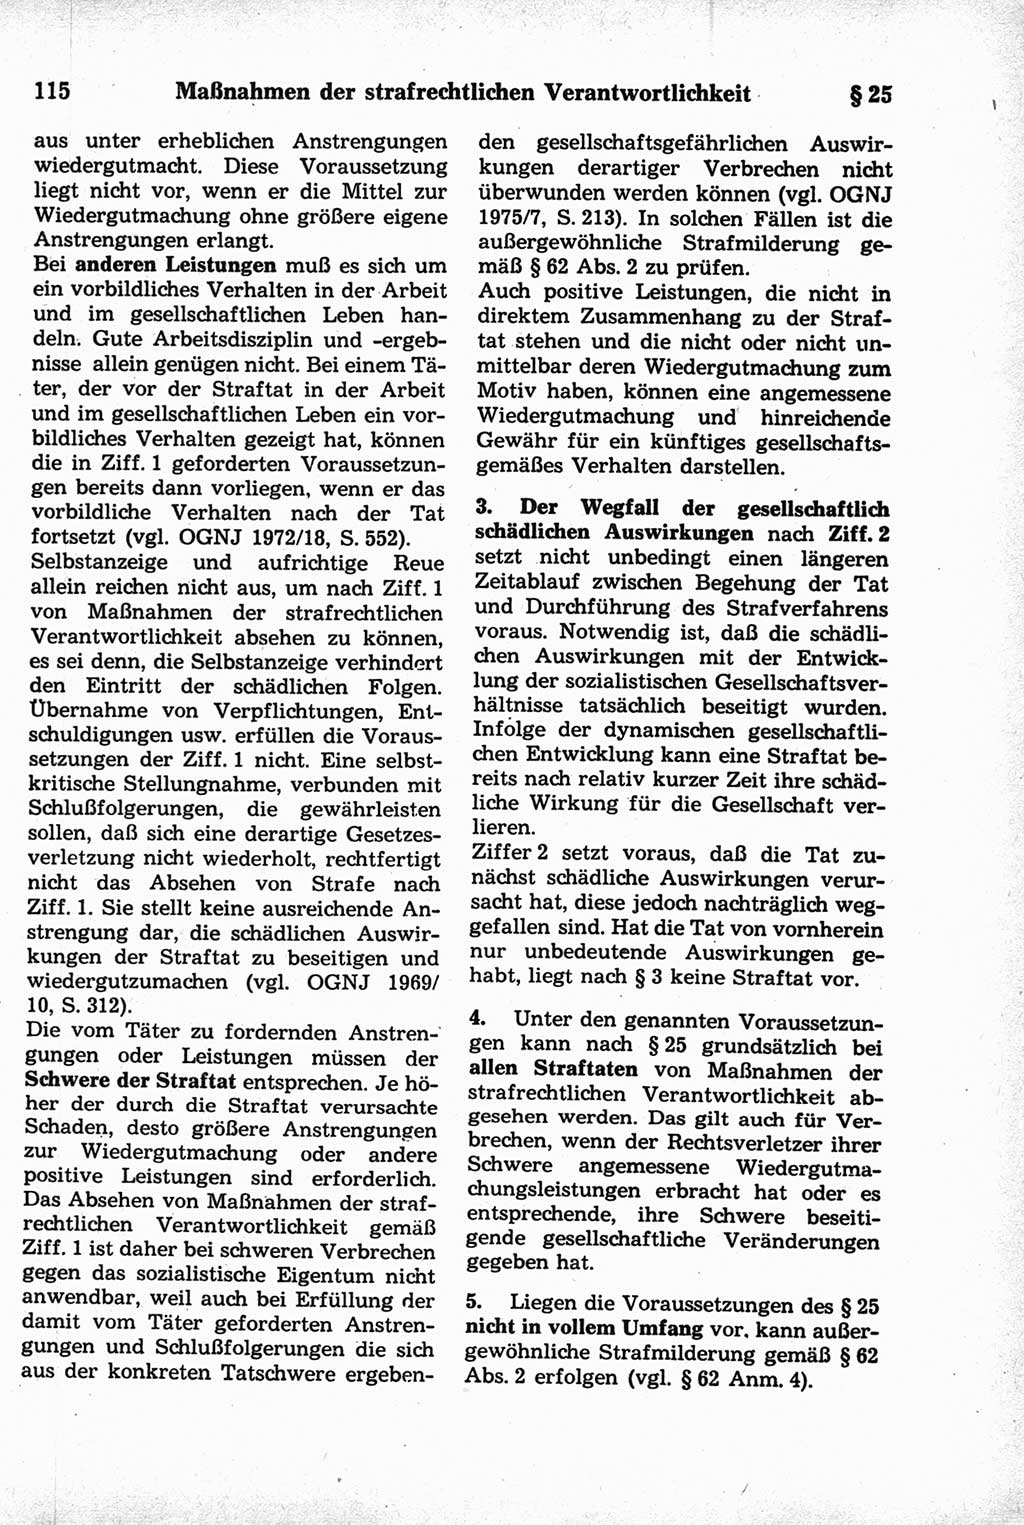 Strafrecht der Deutschen Demokratischen Republik (DDR), Kommentar zum Strafgesetzbuch (StGB) 1981, Seite 115 (Strafr. DDR Komm. StGB 1981, S. 115)